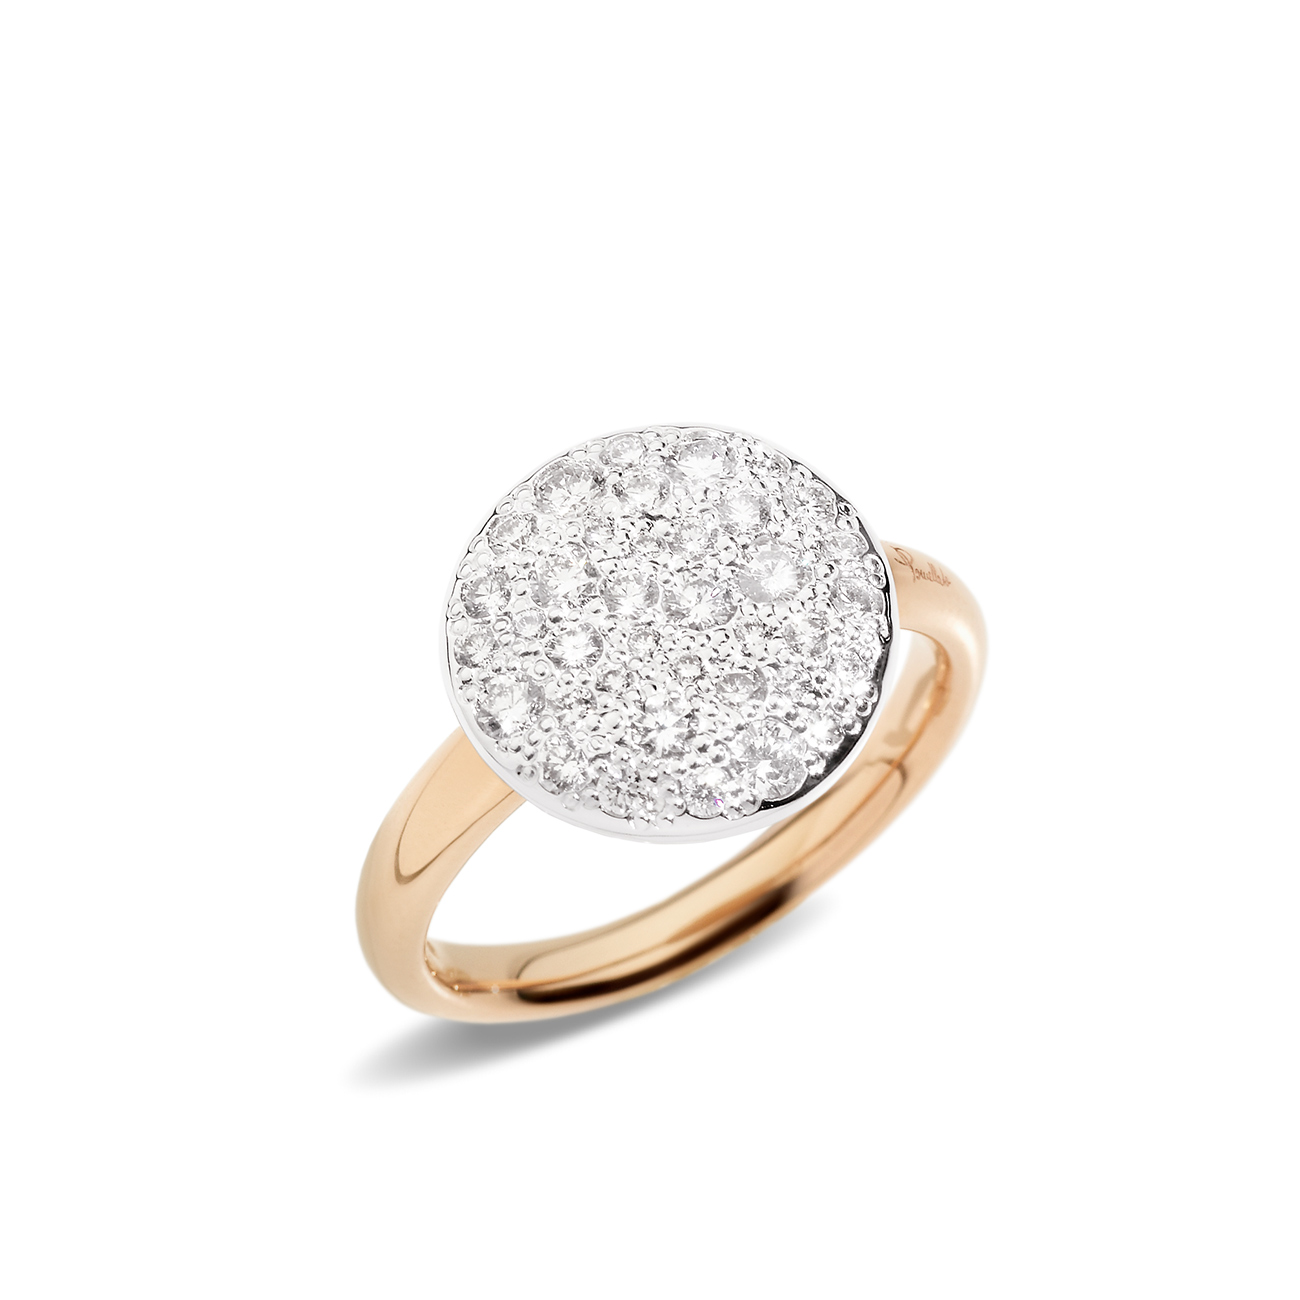 Pomellato Sabbia ring with Diamonds